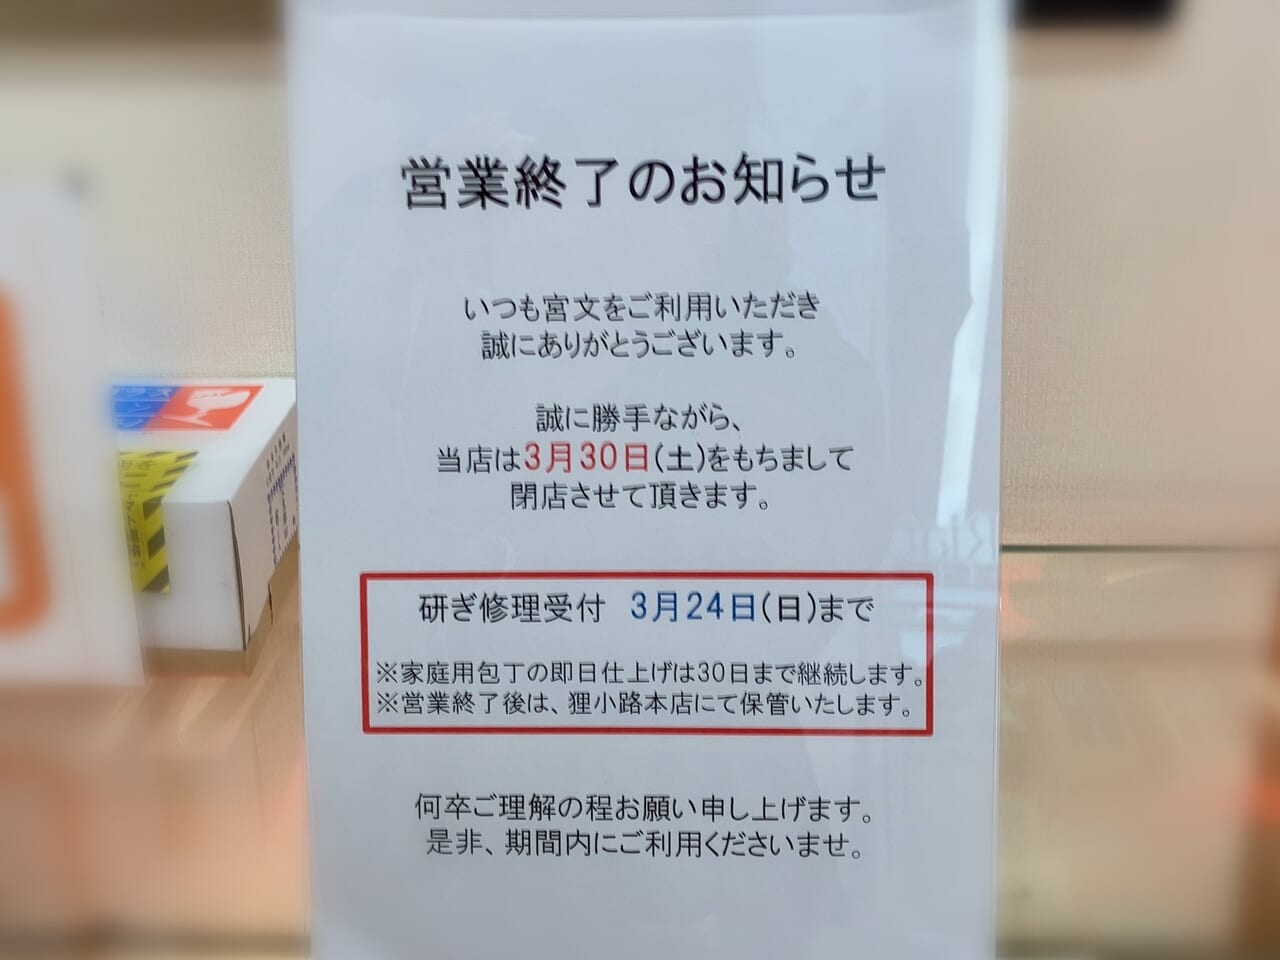 イオン札幌元町ショッピングセンターの「宮文 元町店」が閉店する事がわかりました。